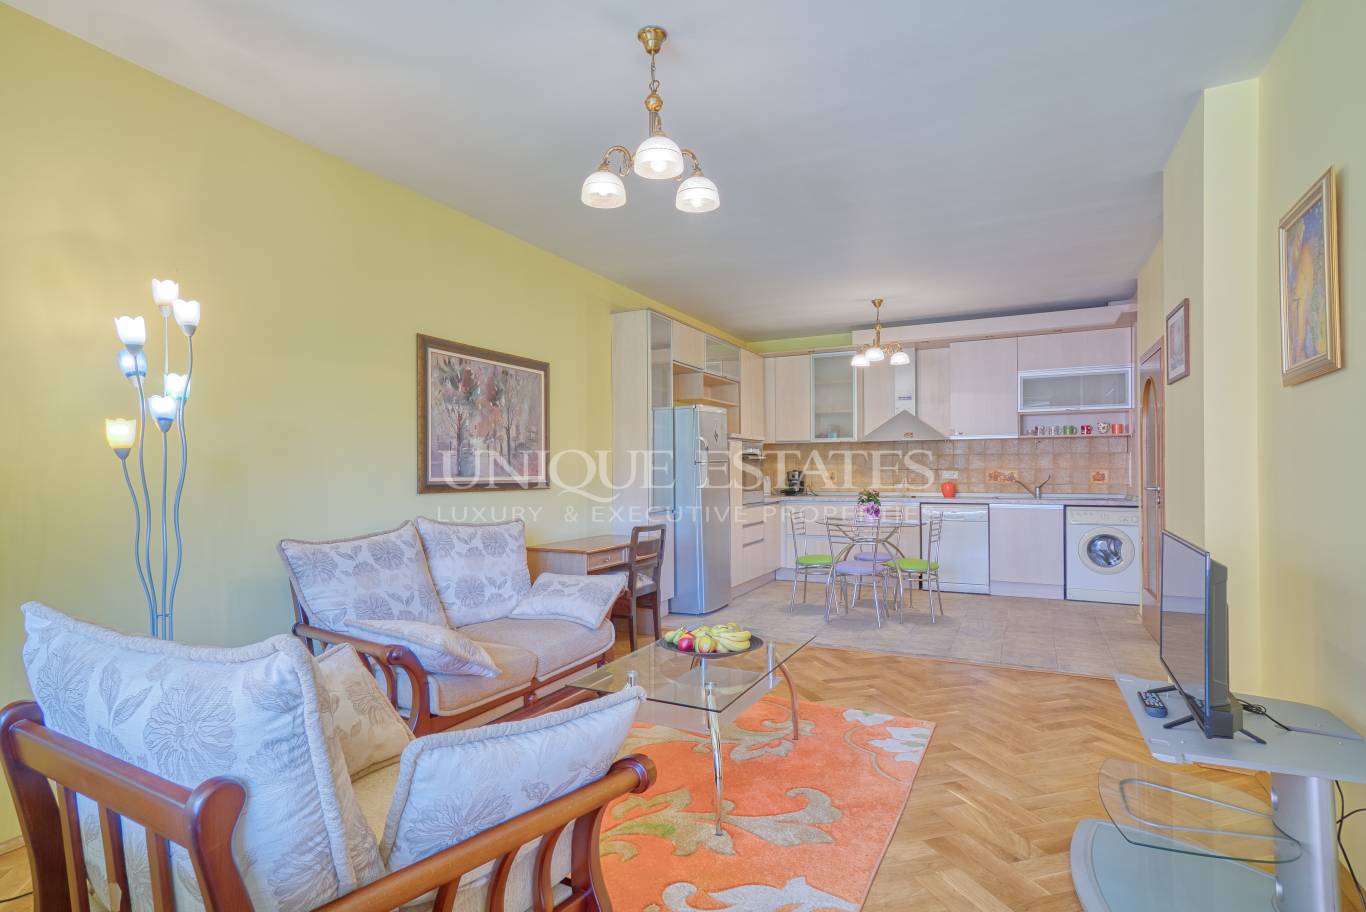 Апартамент под наем в София, Изток - код на имота: N18182 - image 1